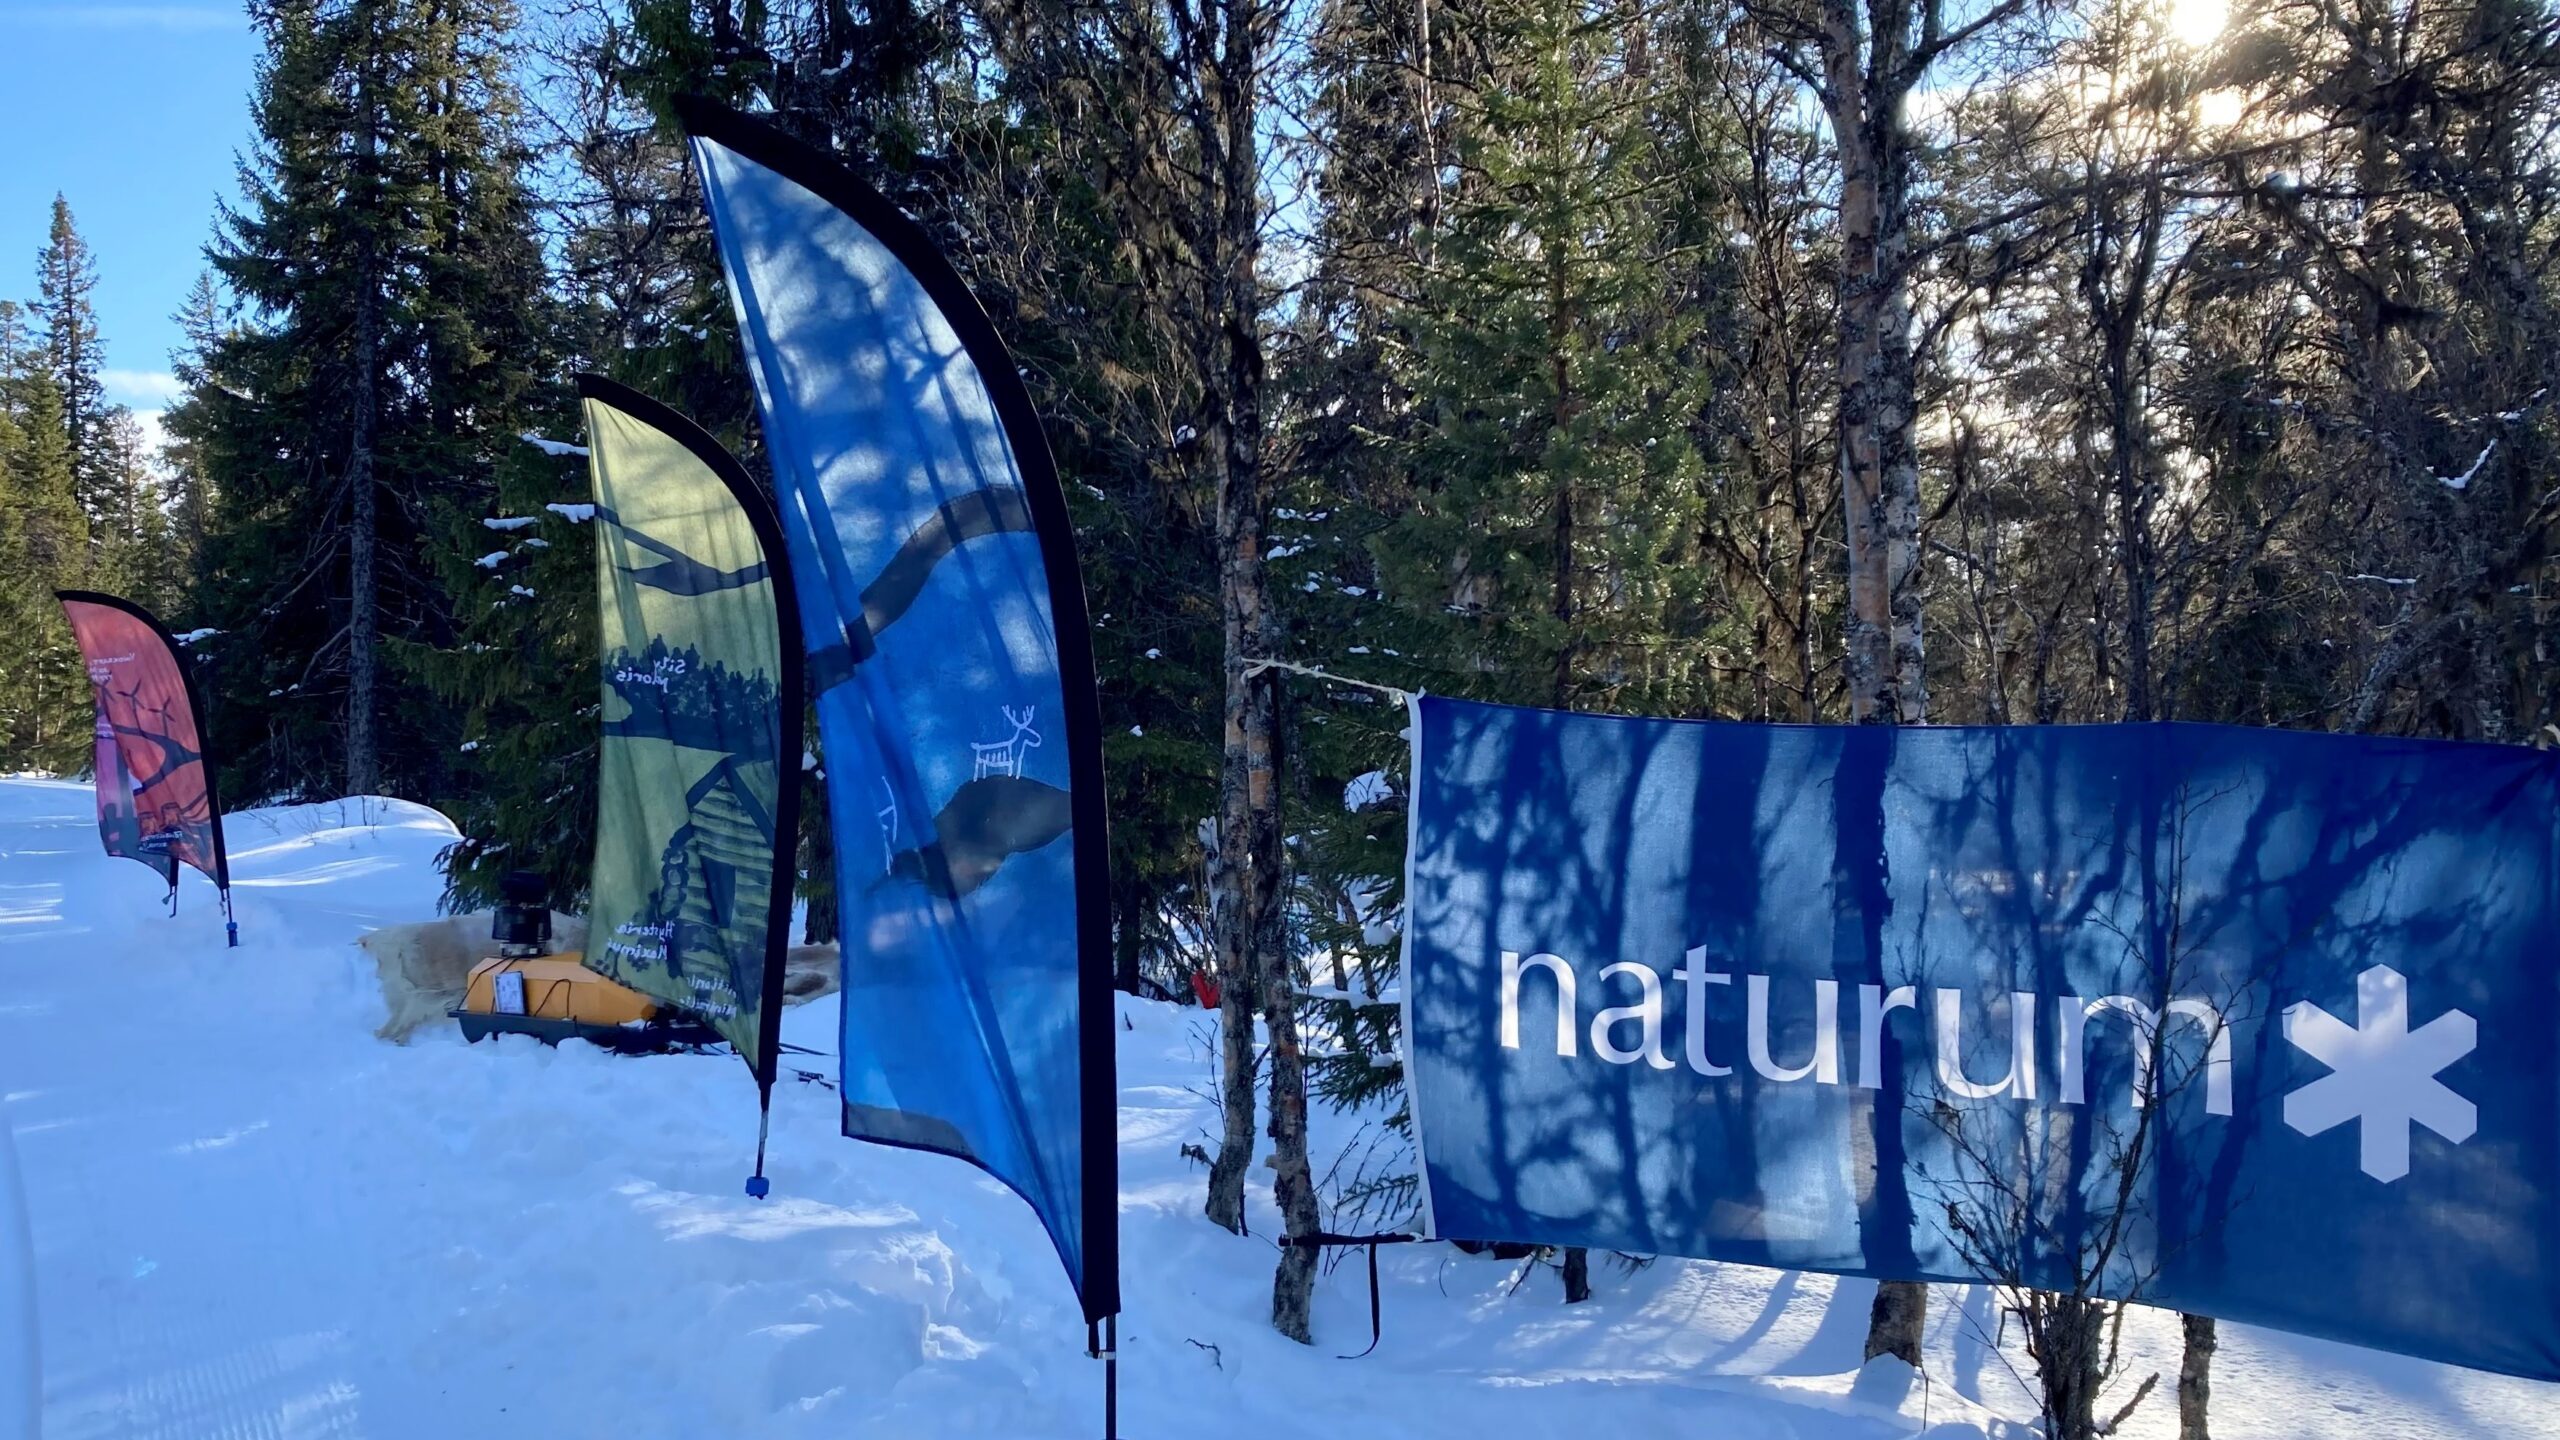 Blå flagga med vit text "naturum" och några färgglada beachflaggor i snöigt skogslandskap